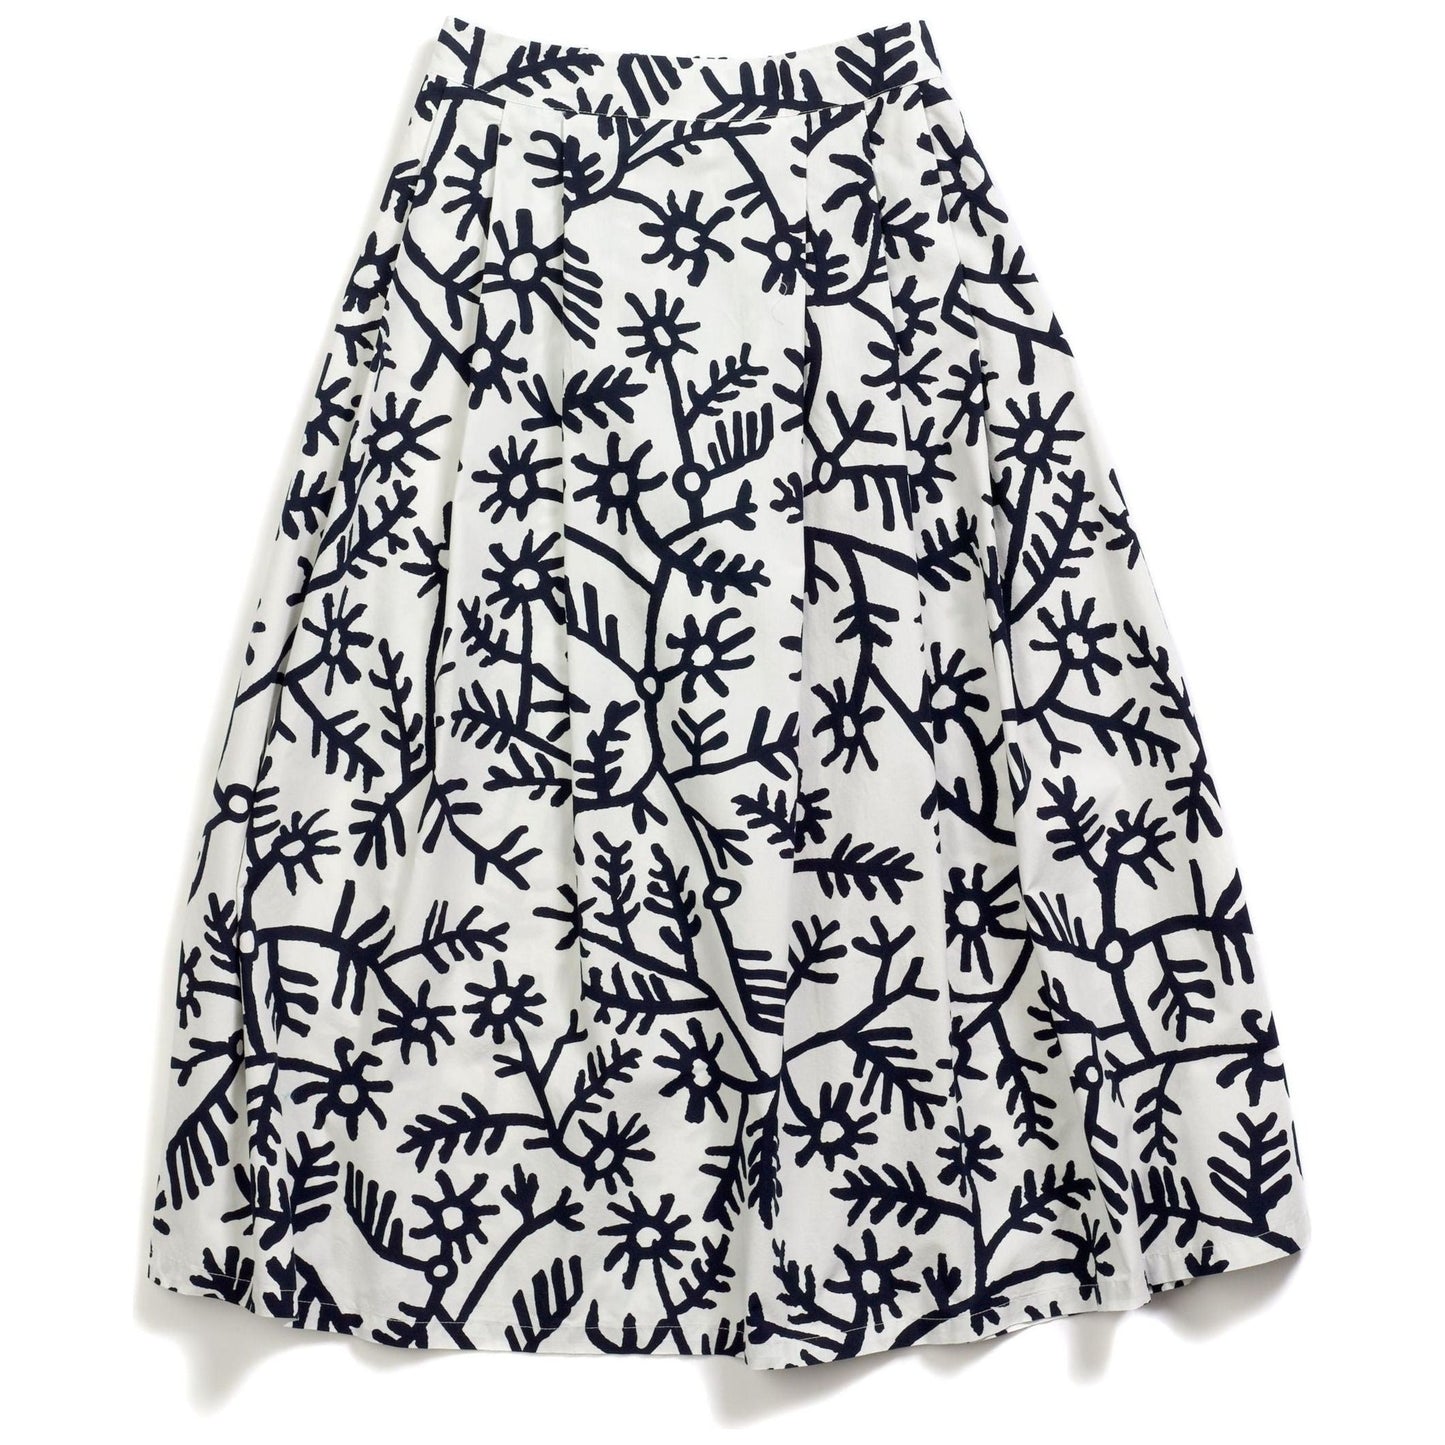 Labo Art W Skirt Gonna Maso Beoufort Nino Skirt, Winter White